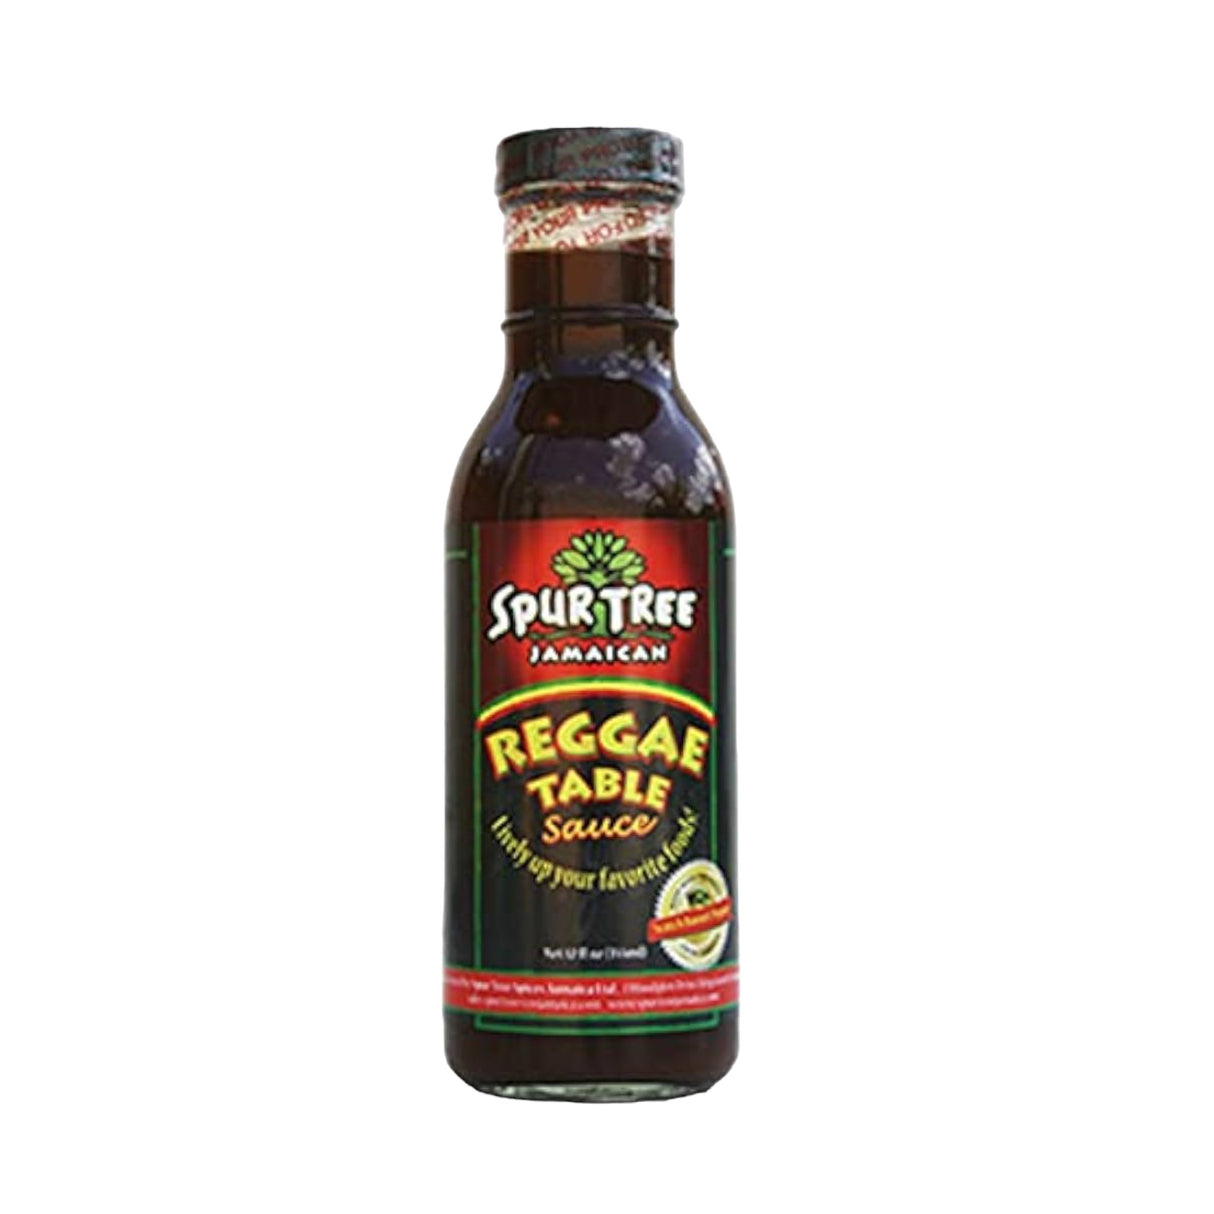 Spur Tree Reggae Table Sauce